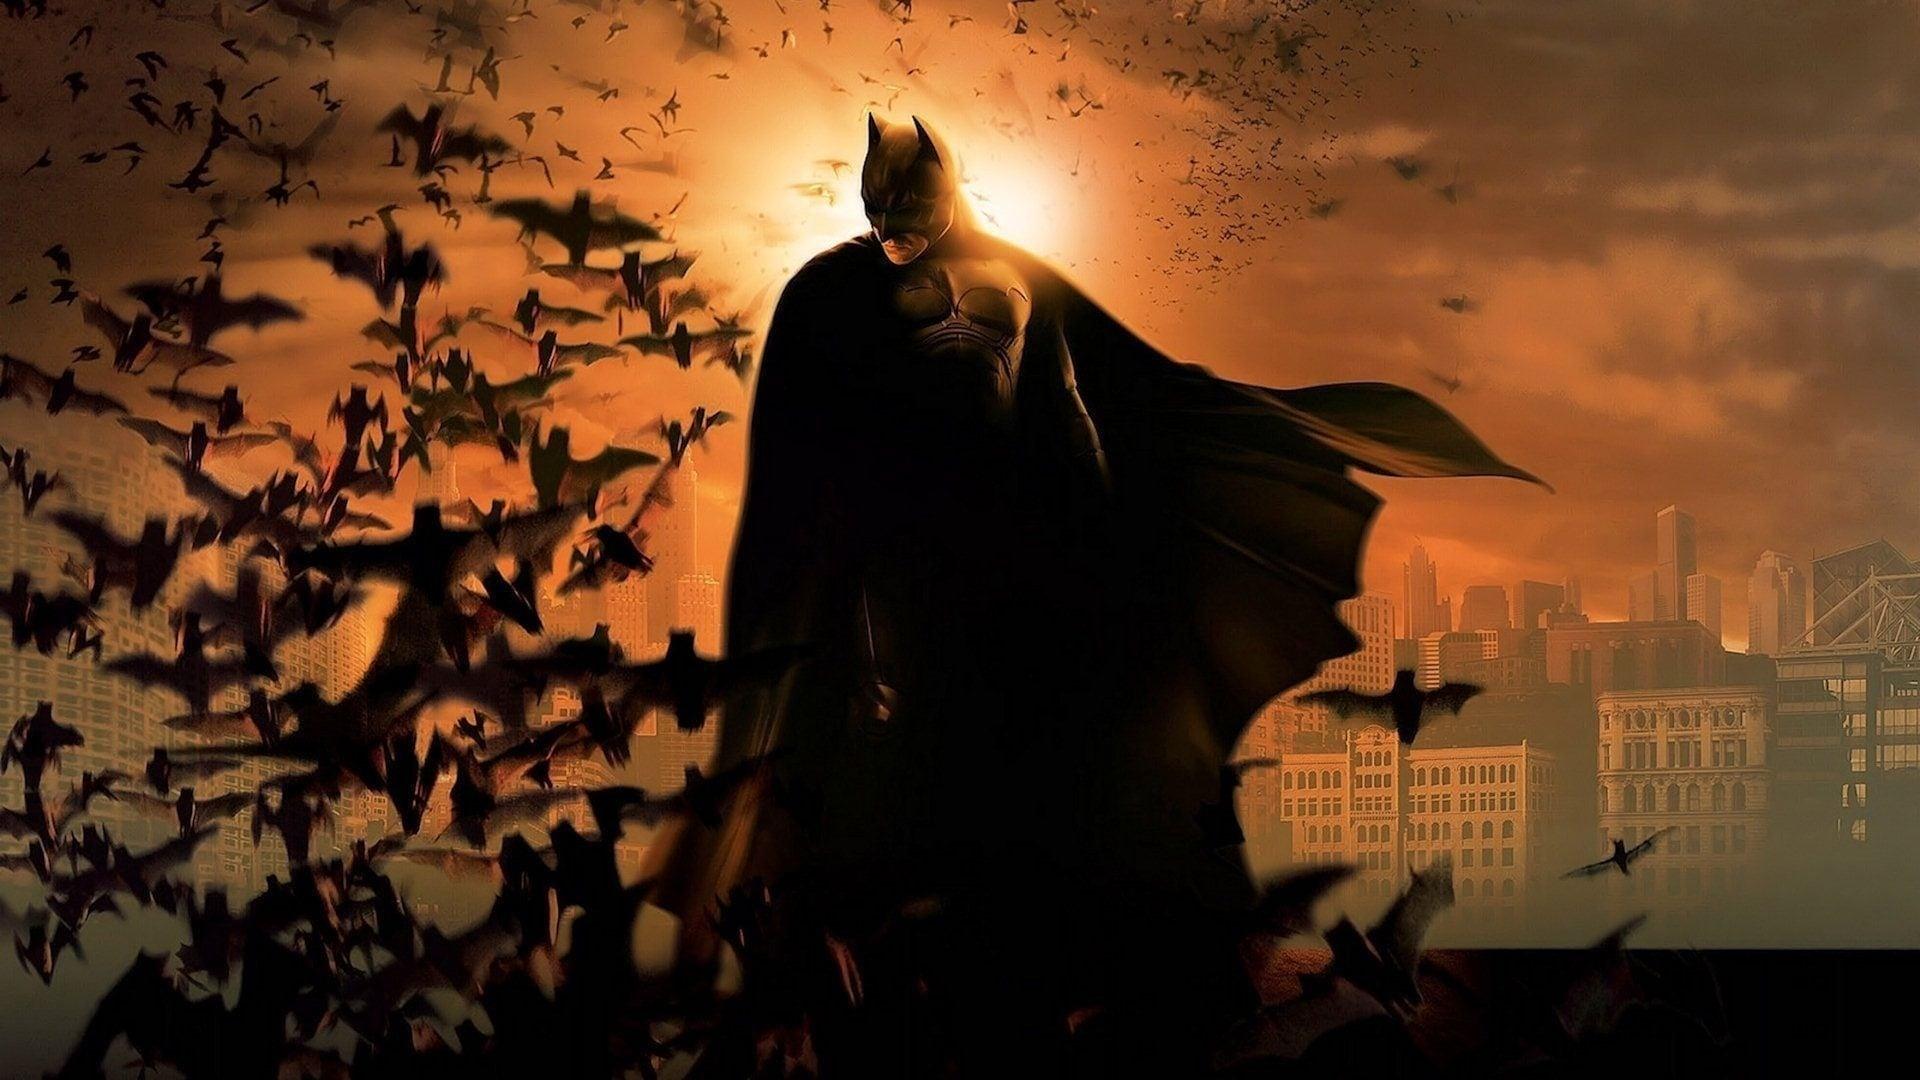 Batman Begins backdrop